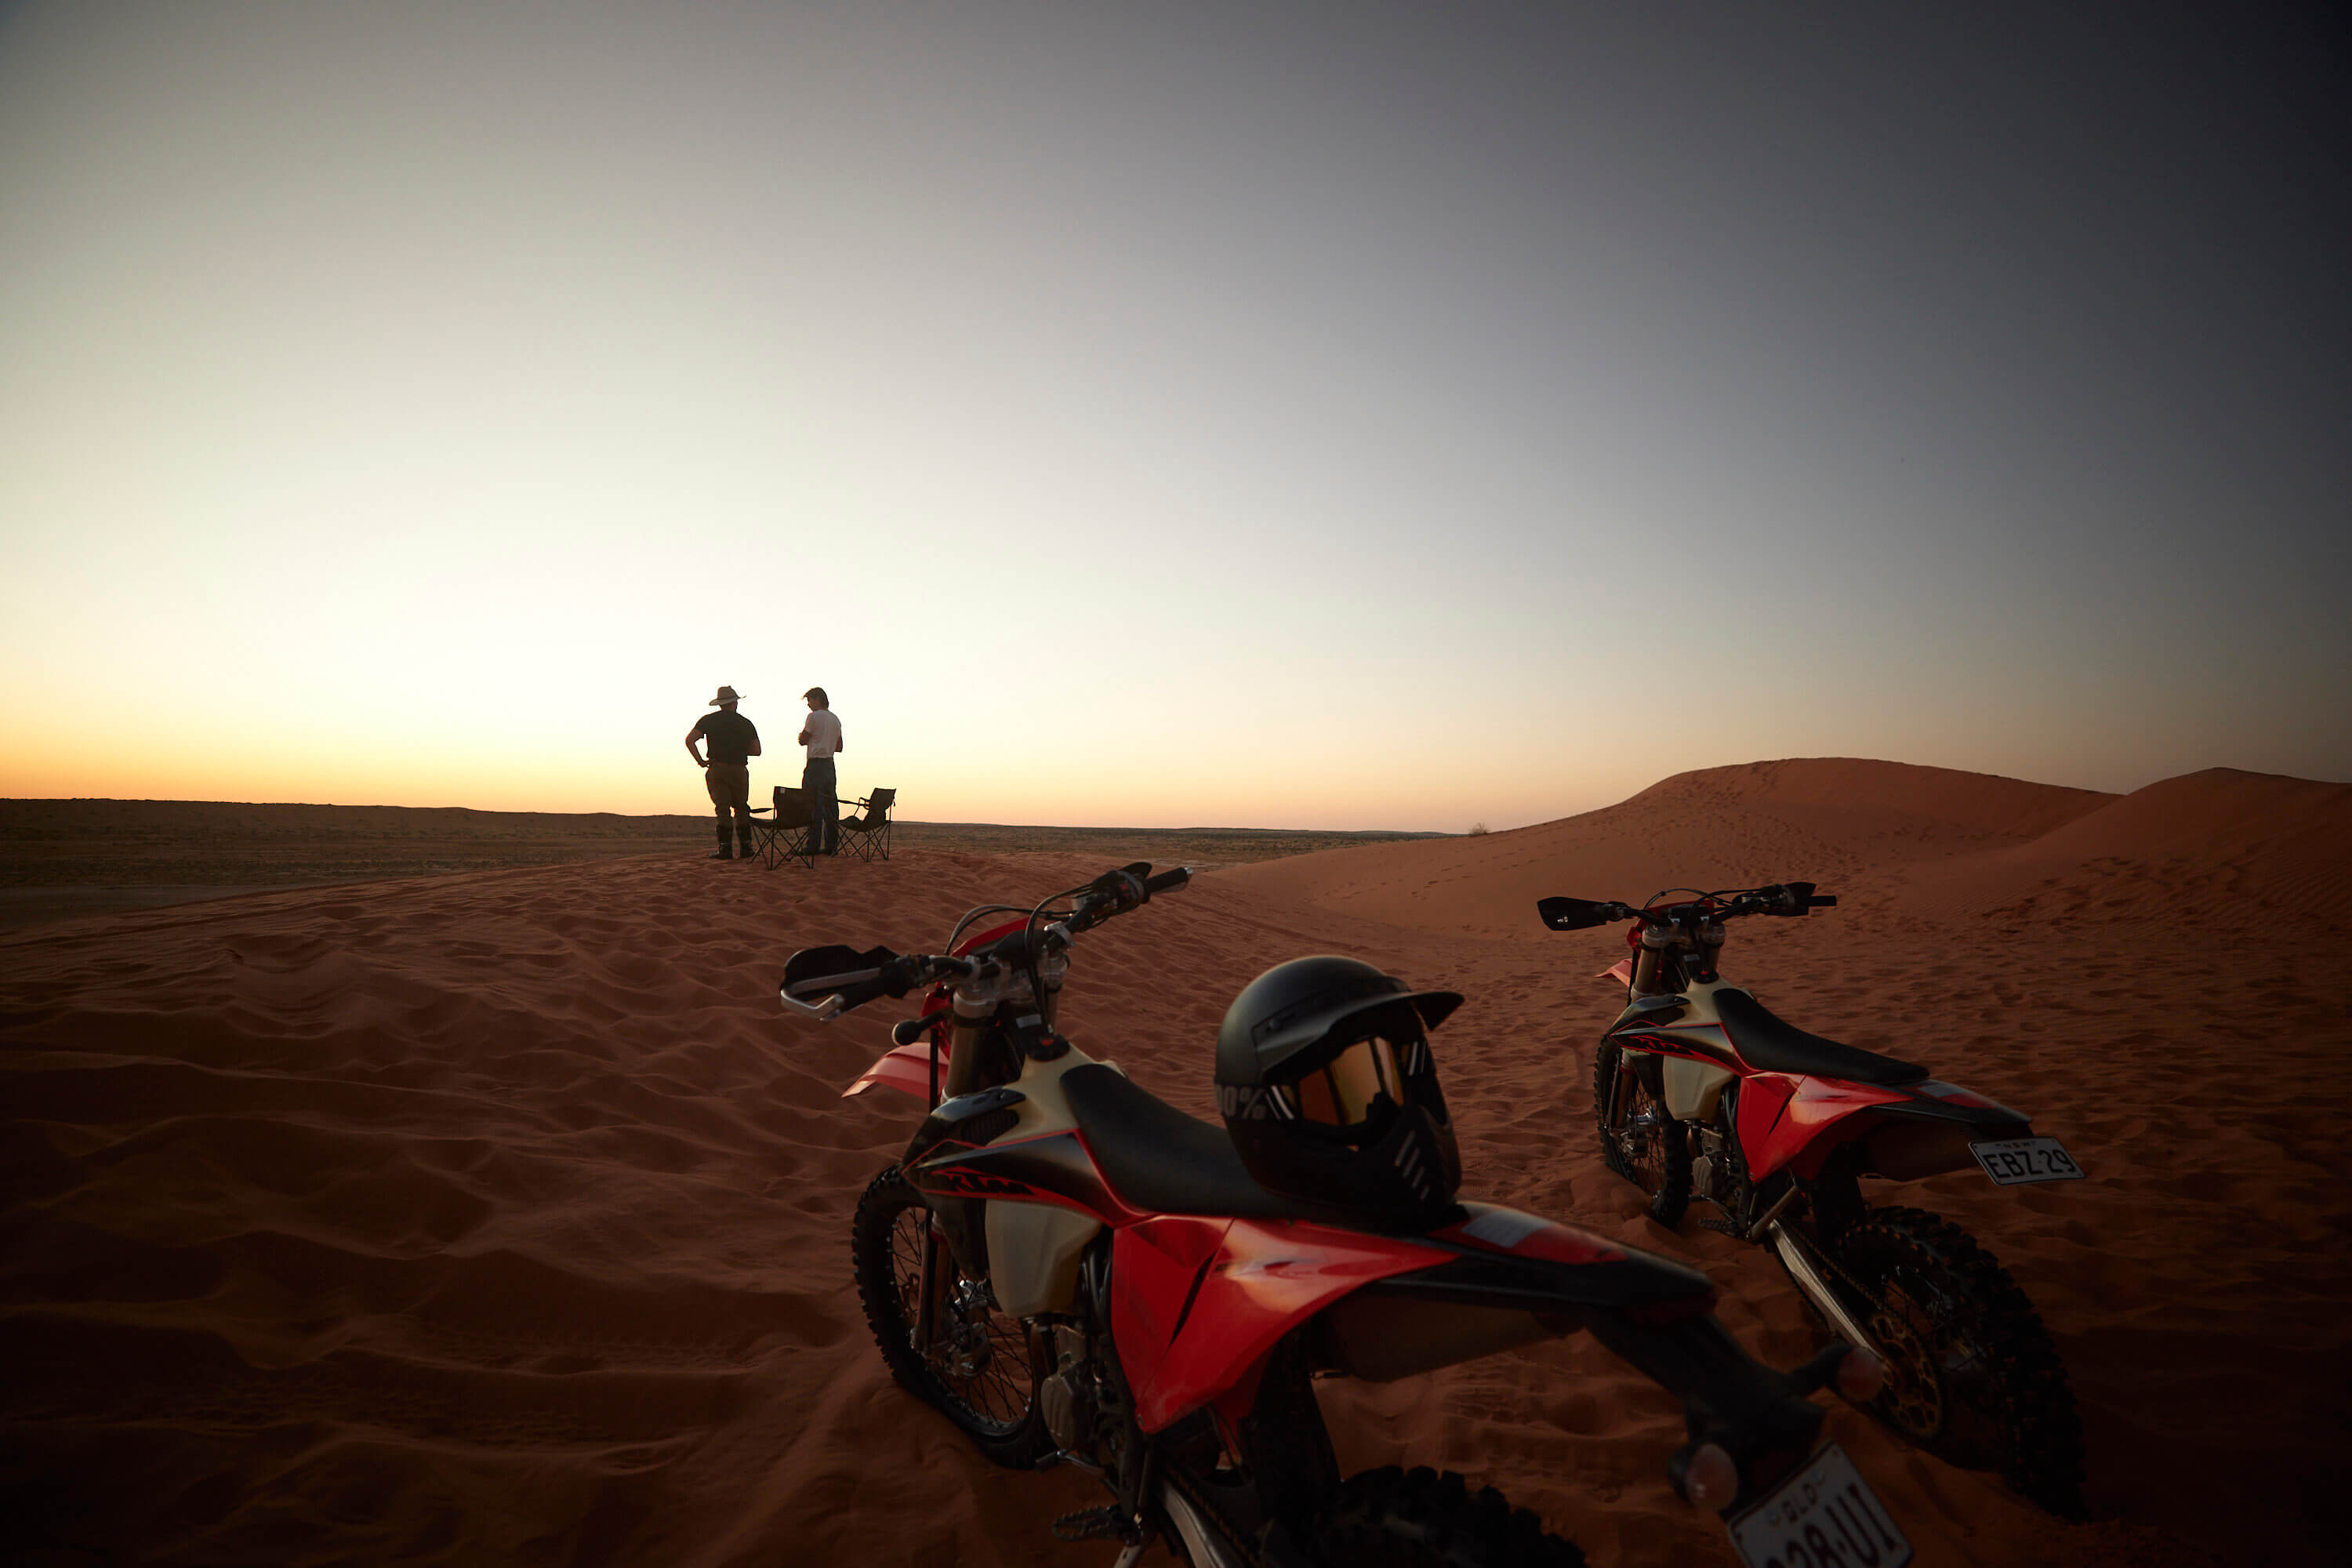 [Translate to Englisch:] Zwei Männer beobachten den Sonnenuntergang mit ihren zwei Motorrädern